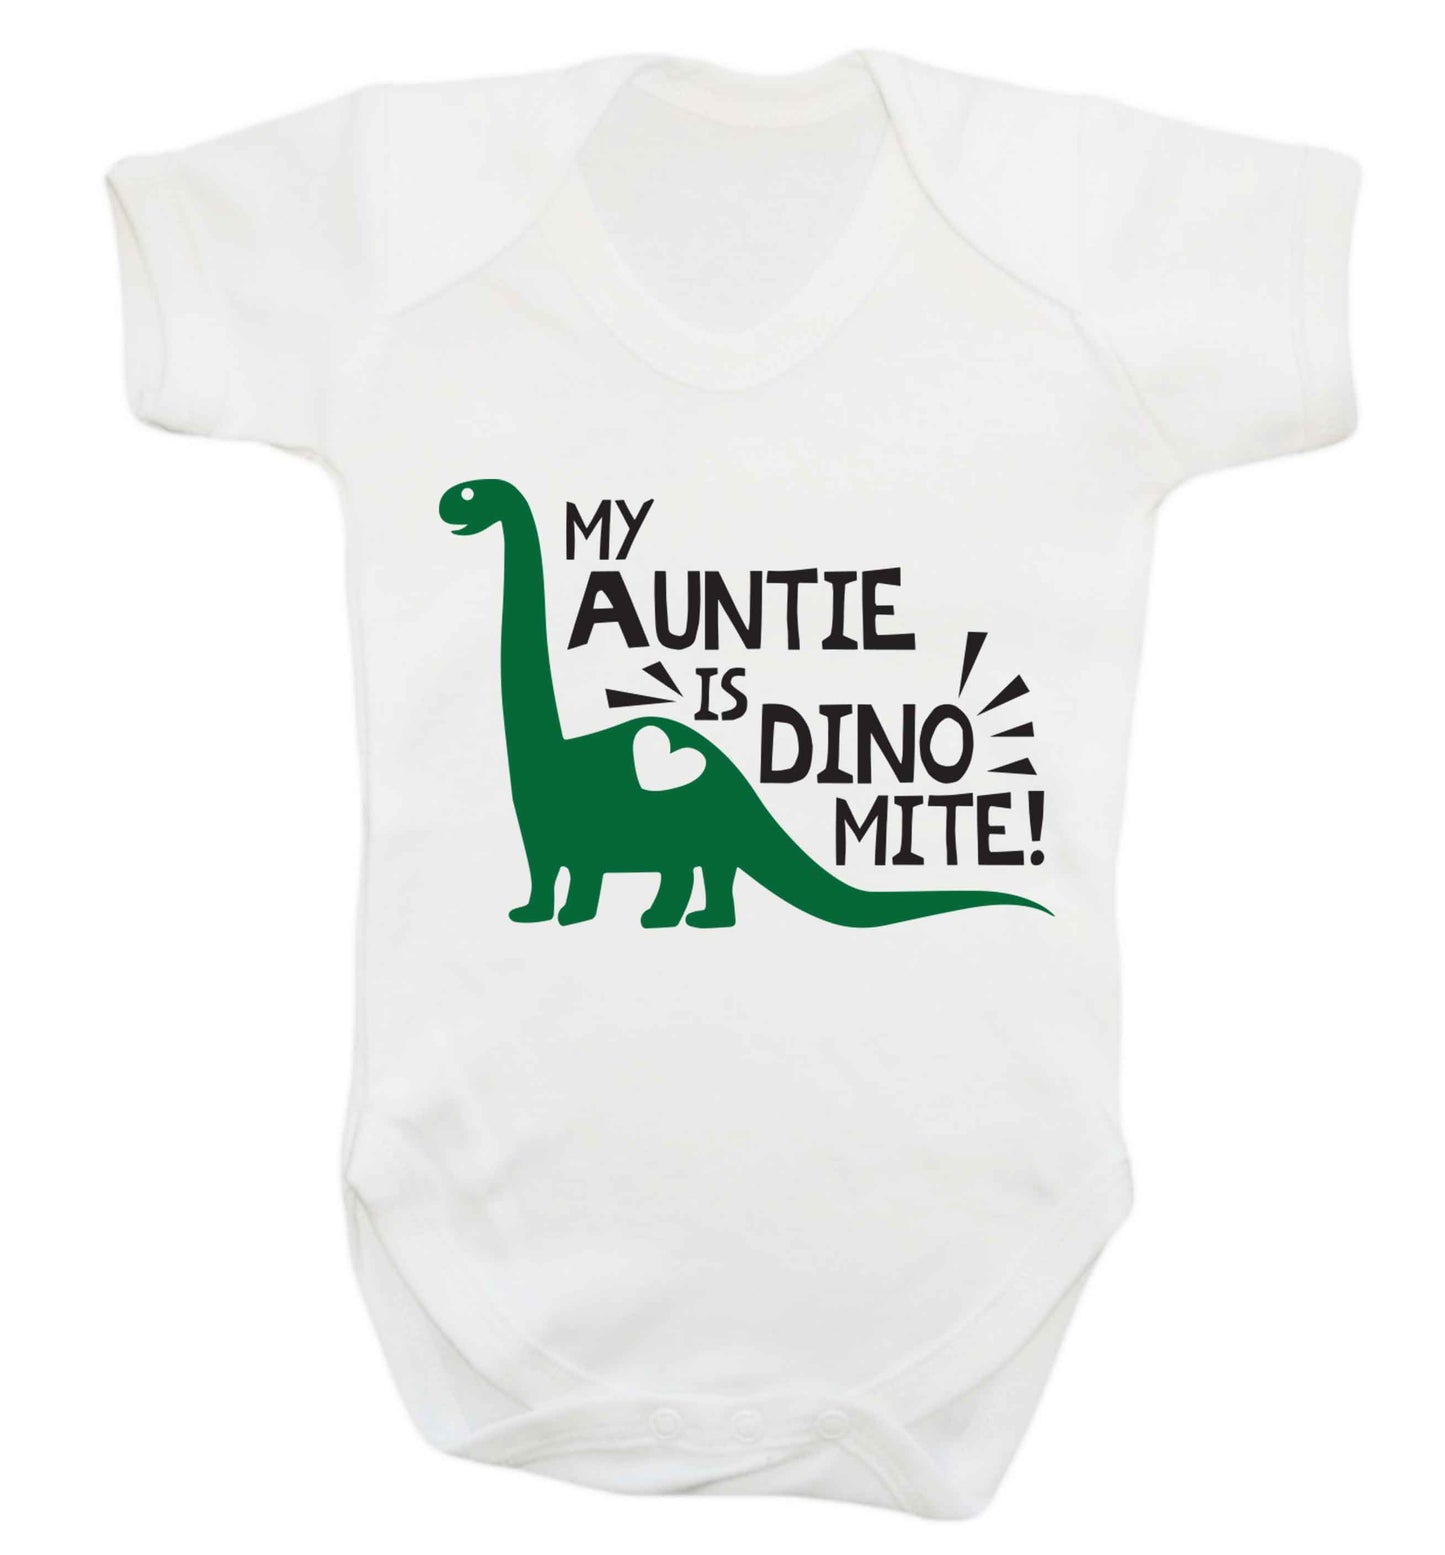 My auntie is dinomite! Baby Vest white 18-24 months